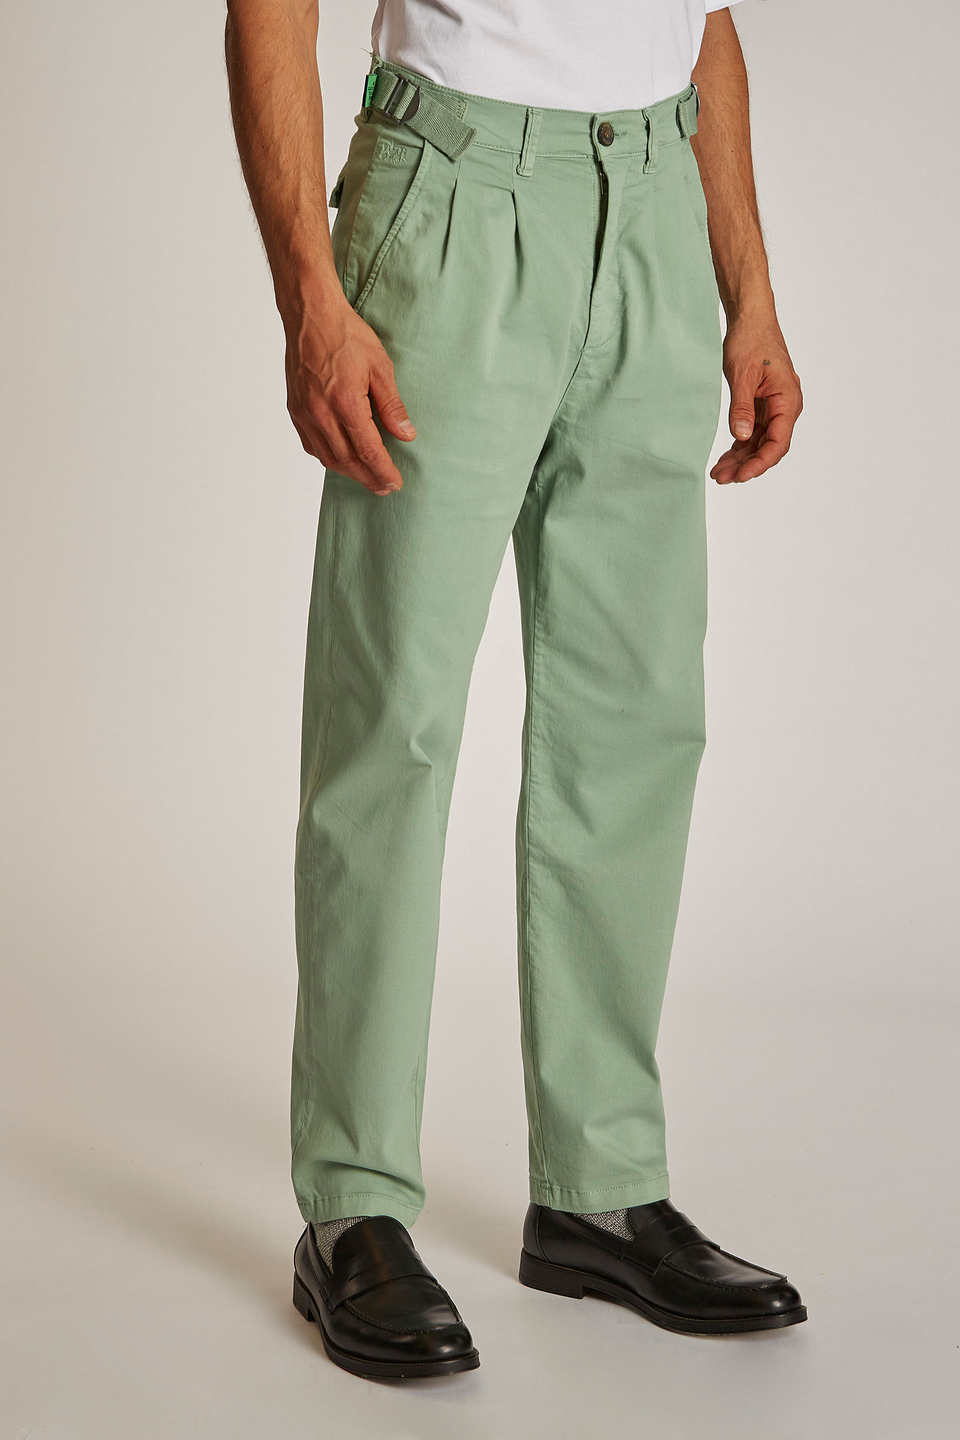 Pantalone da uomo modello chino regular fit - La Martina - Official Online Shop